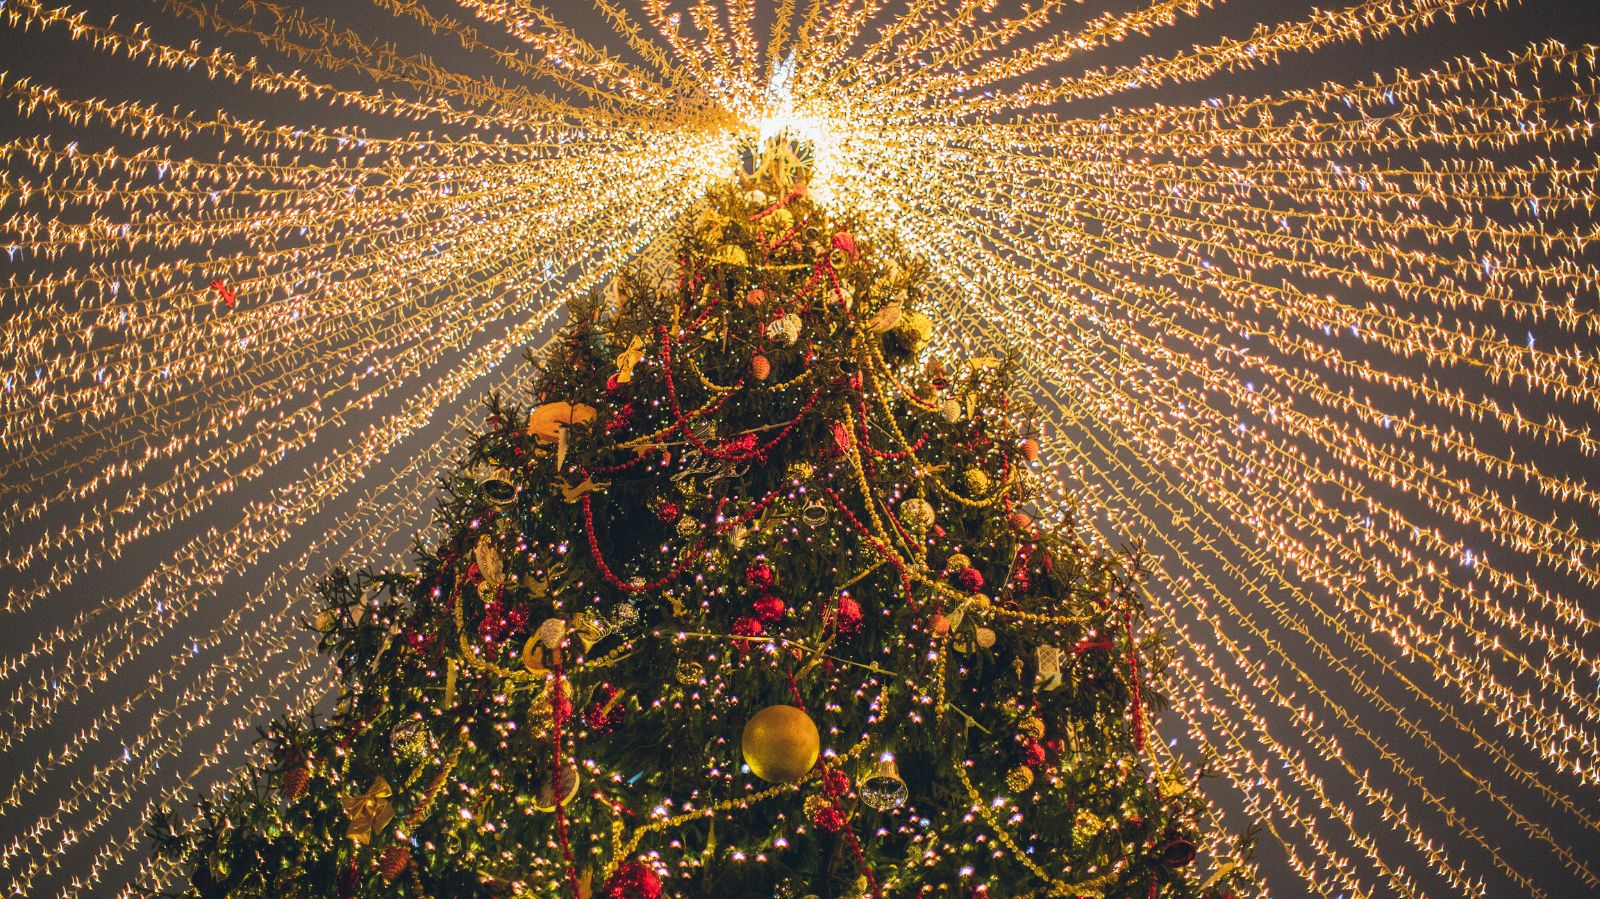 Invloed 鍔 Gespierd Hoeveel lampjes in een kerstboom? - Kerstverlichting.nl